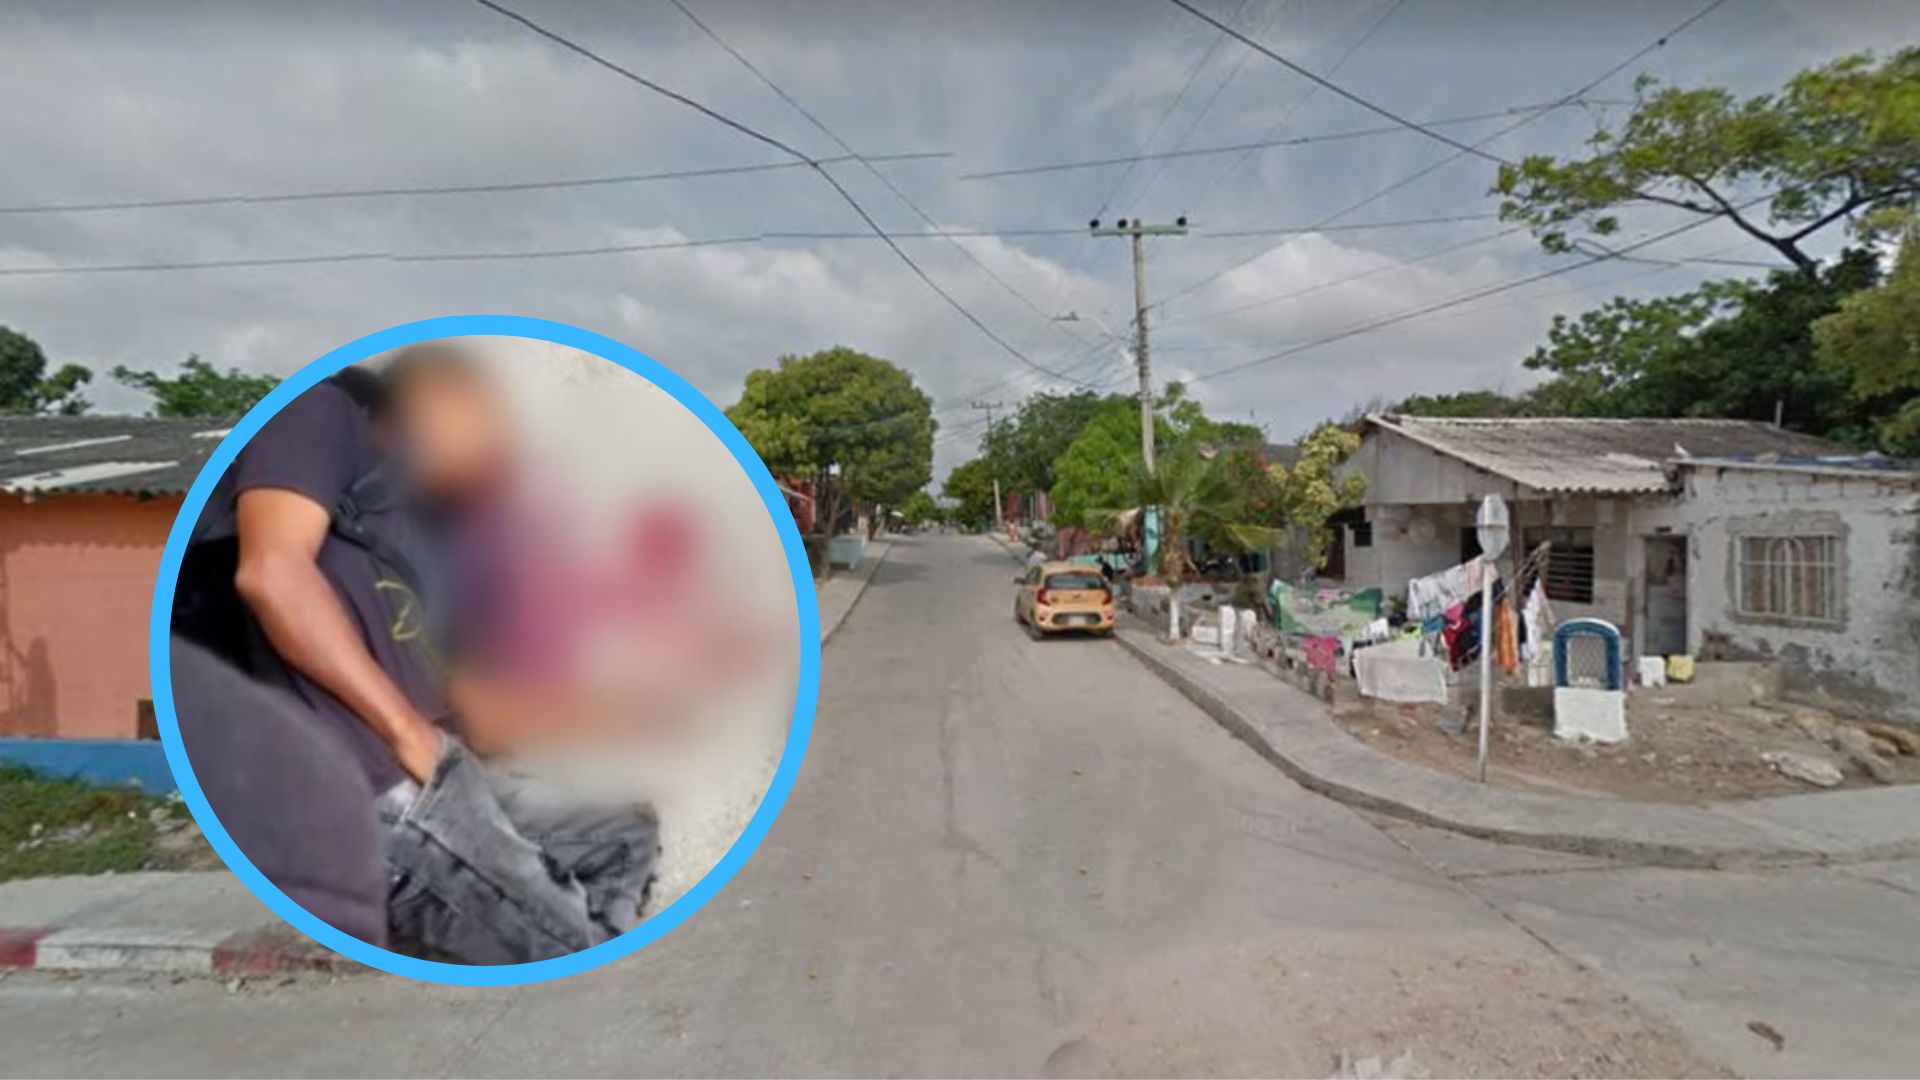 Cadáver del asesinado / Imagen de referencia barrio Las Malvinas.